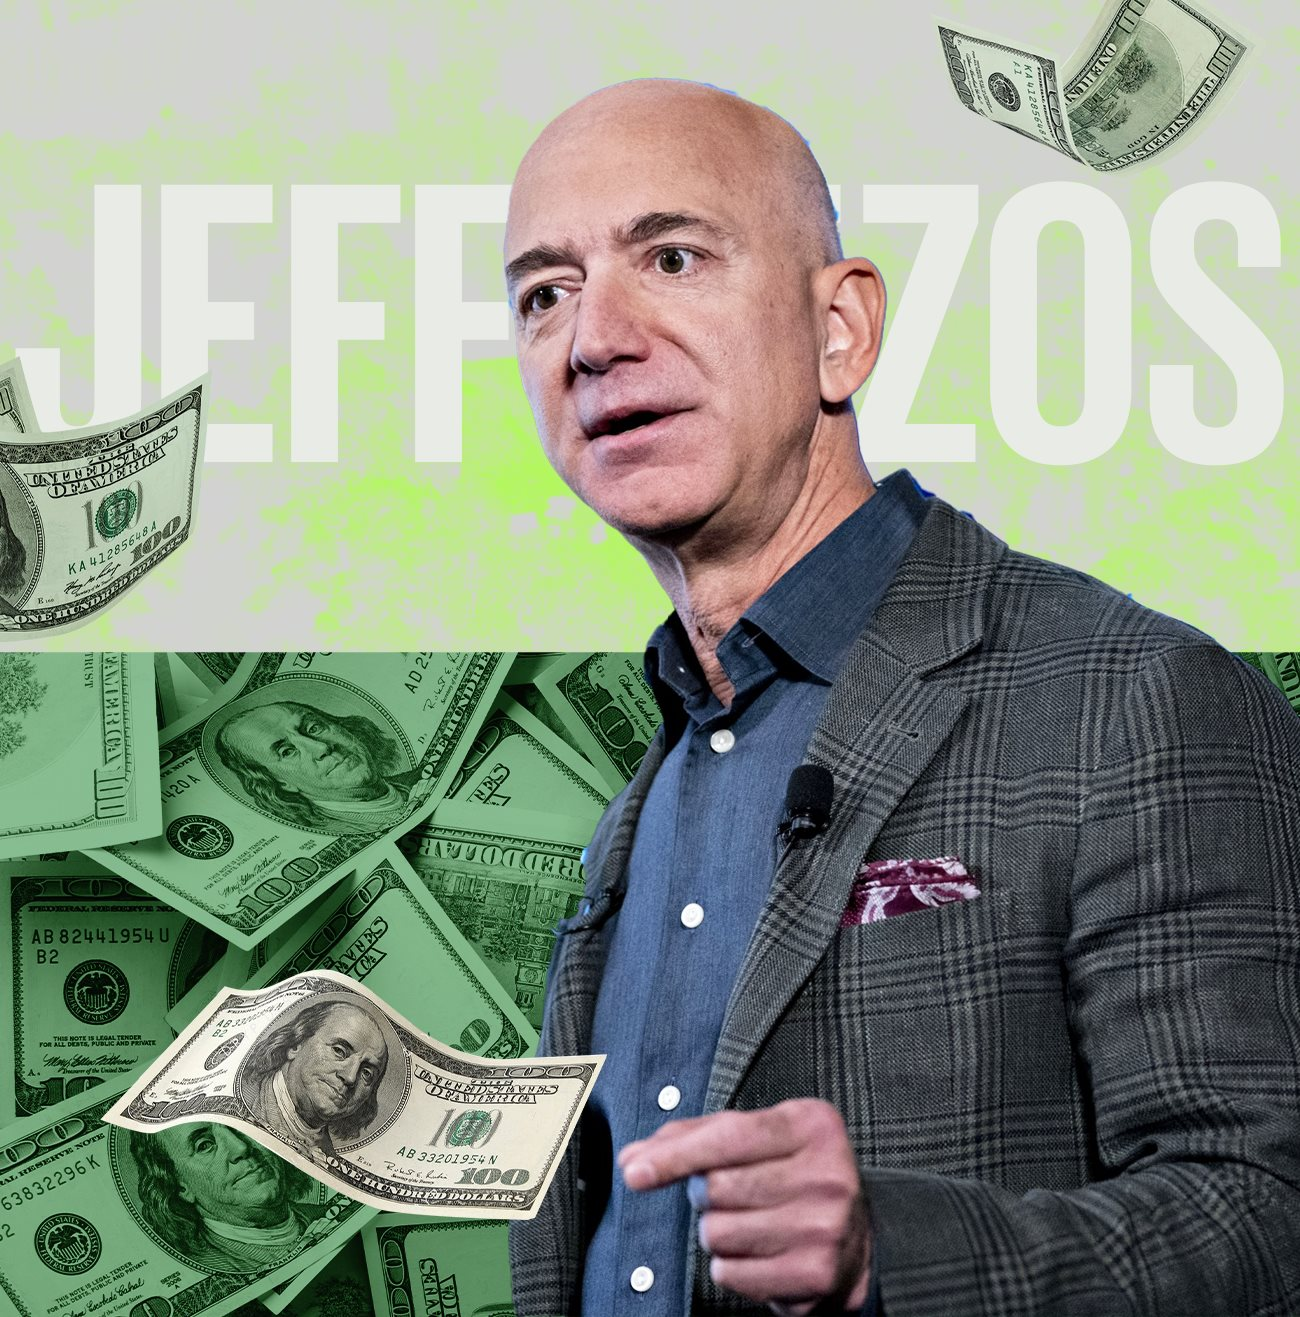 150 tỷ USD tiền từ thiện của Jeff Bezos: Đến từ mồ hôi nước mắt của nhân viên Amazon, cho đi chỉ vì sợ nhận chỉ trích? - Ảnh 2.